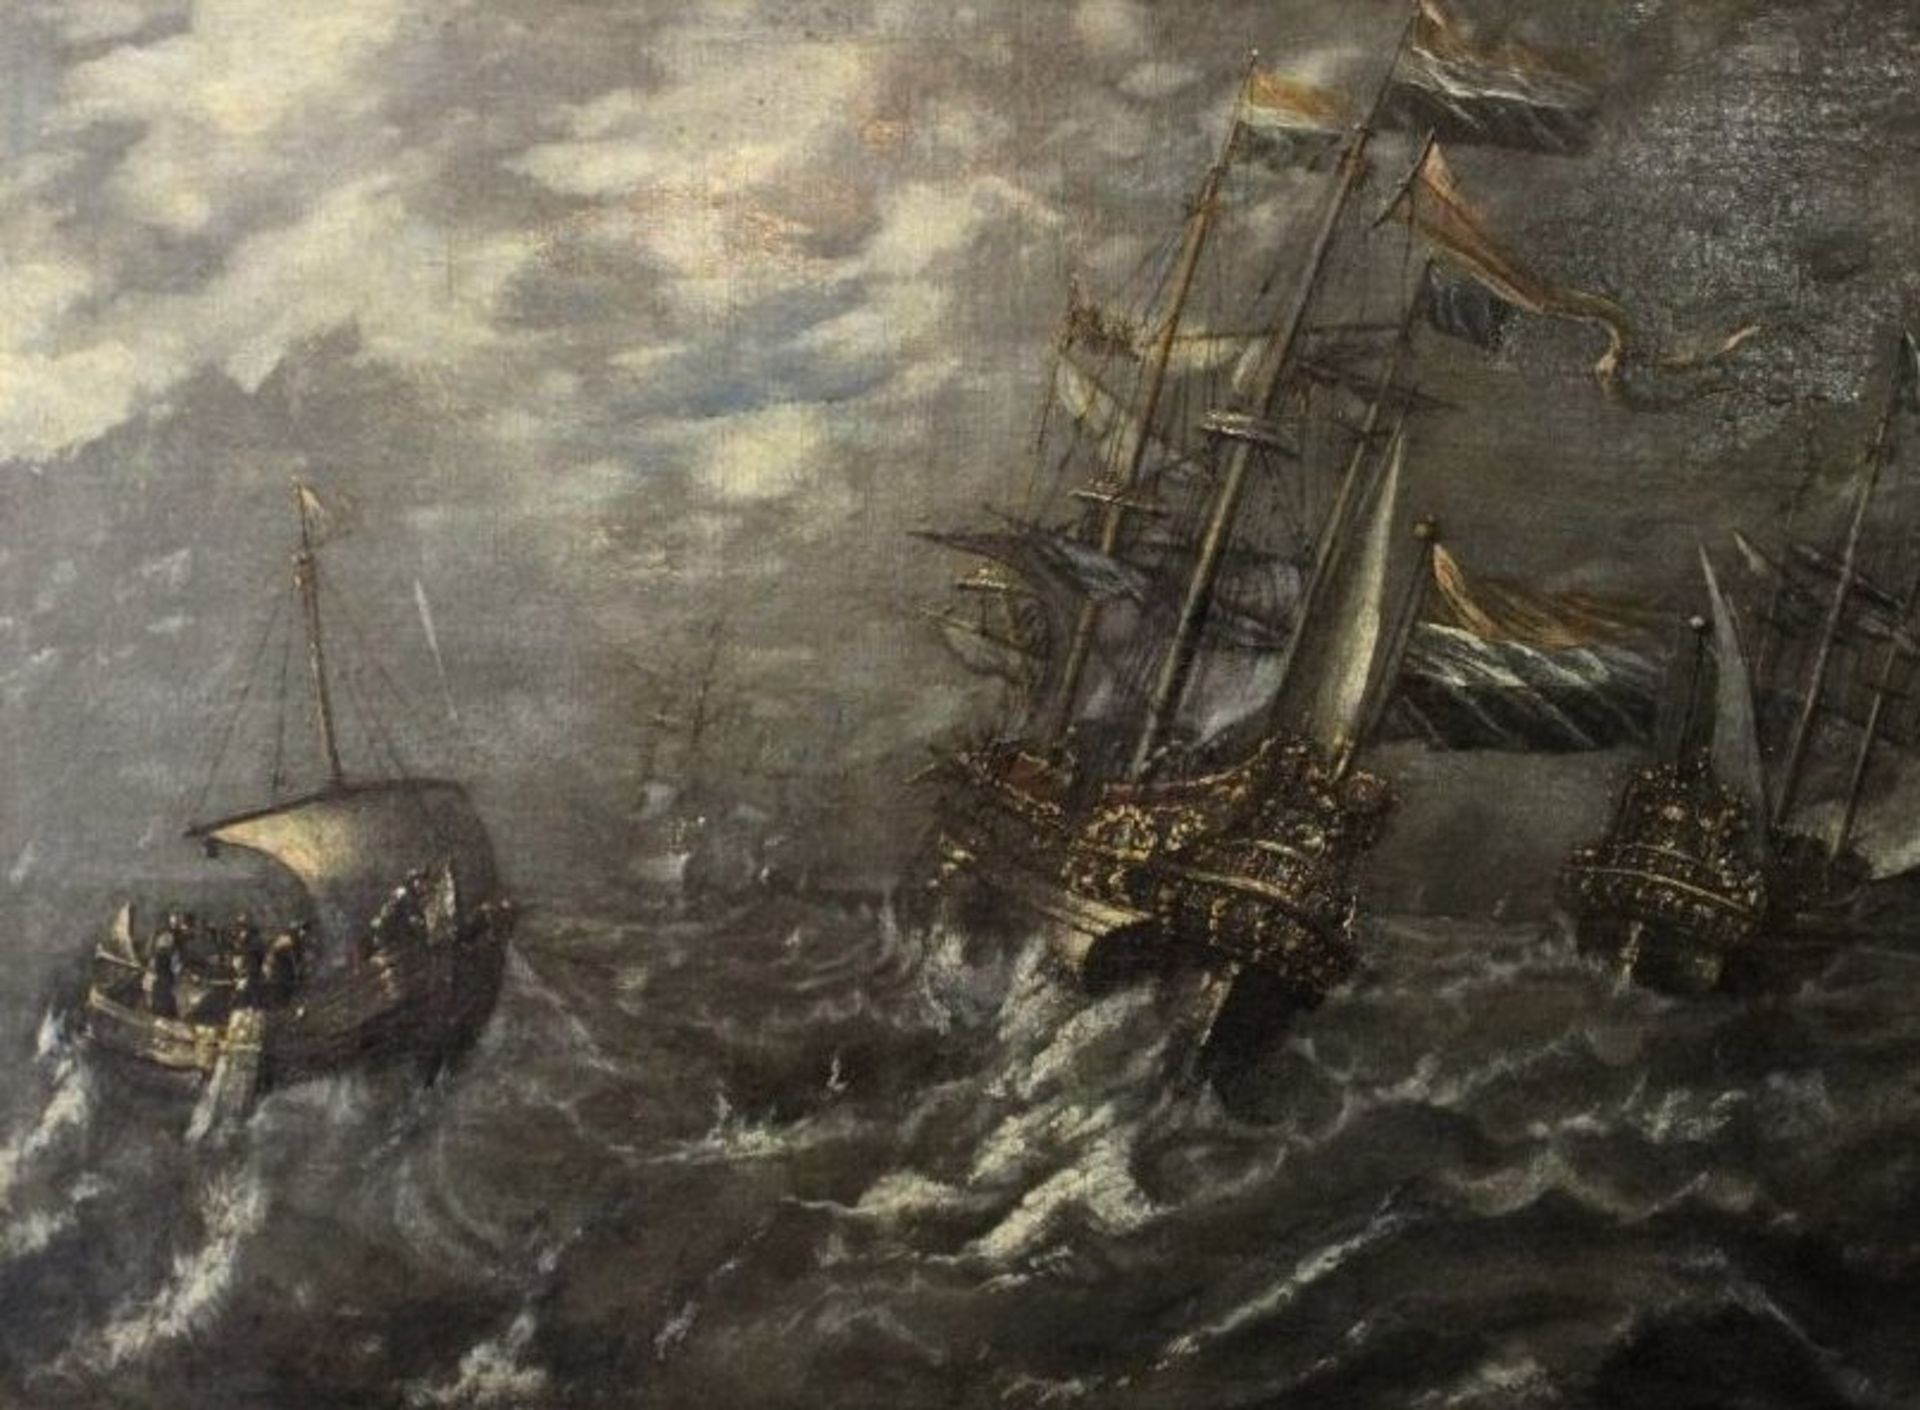 niederländischer Marinemaler des 18. Jhd., Schiffe in schwerer See, Öl/Leinwand, verso Zettel "